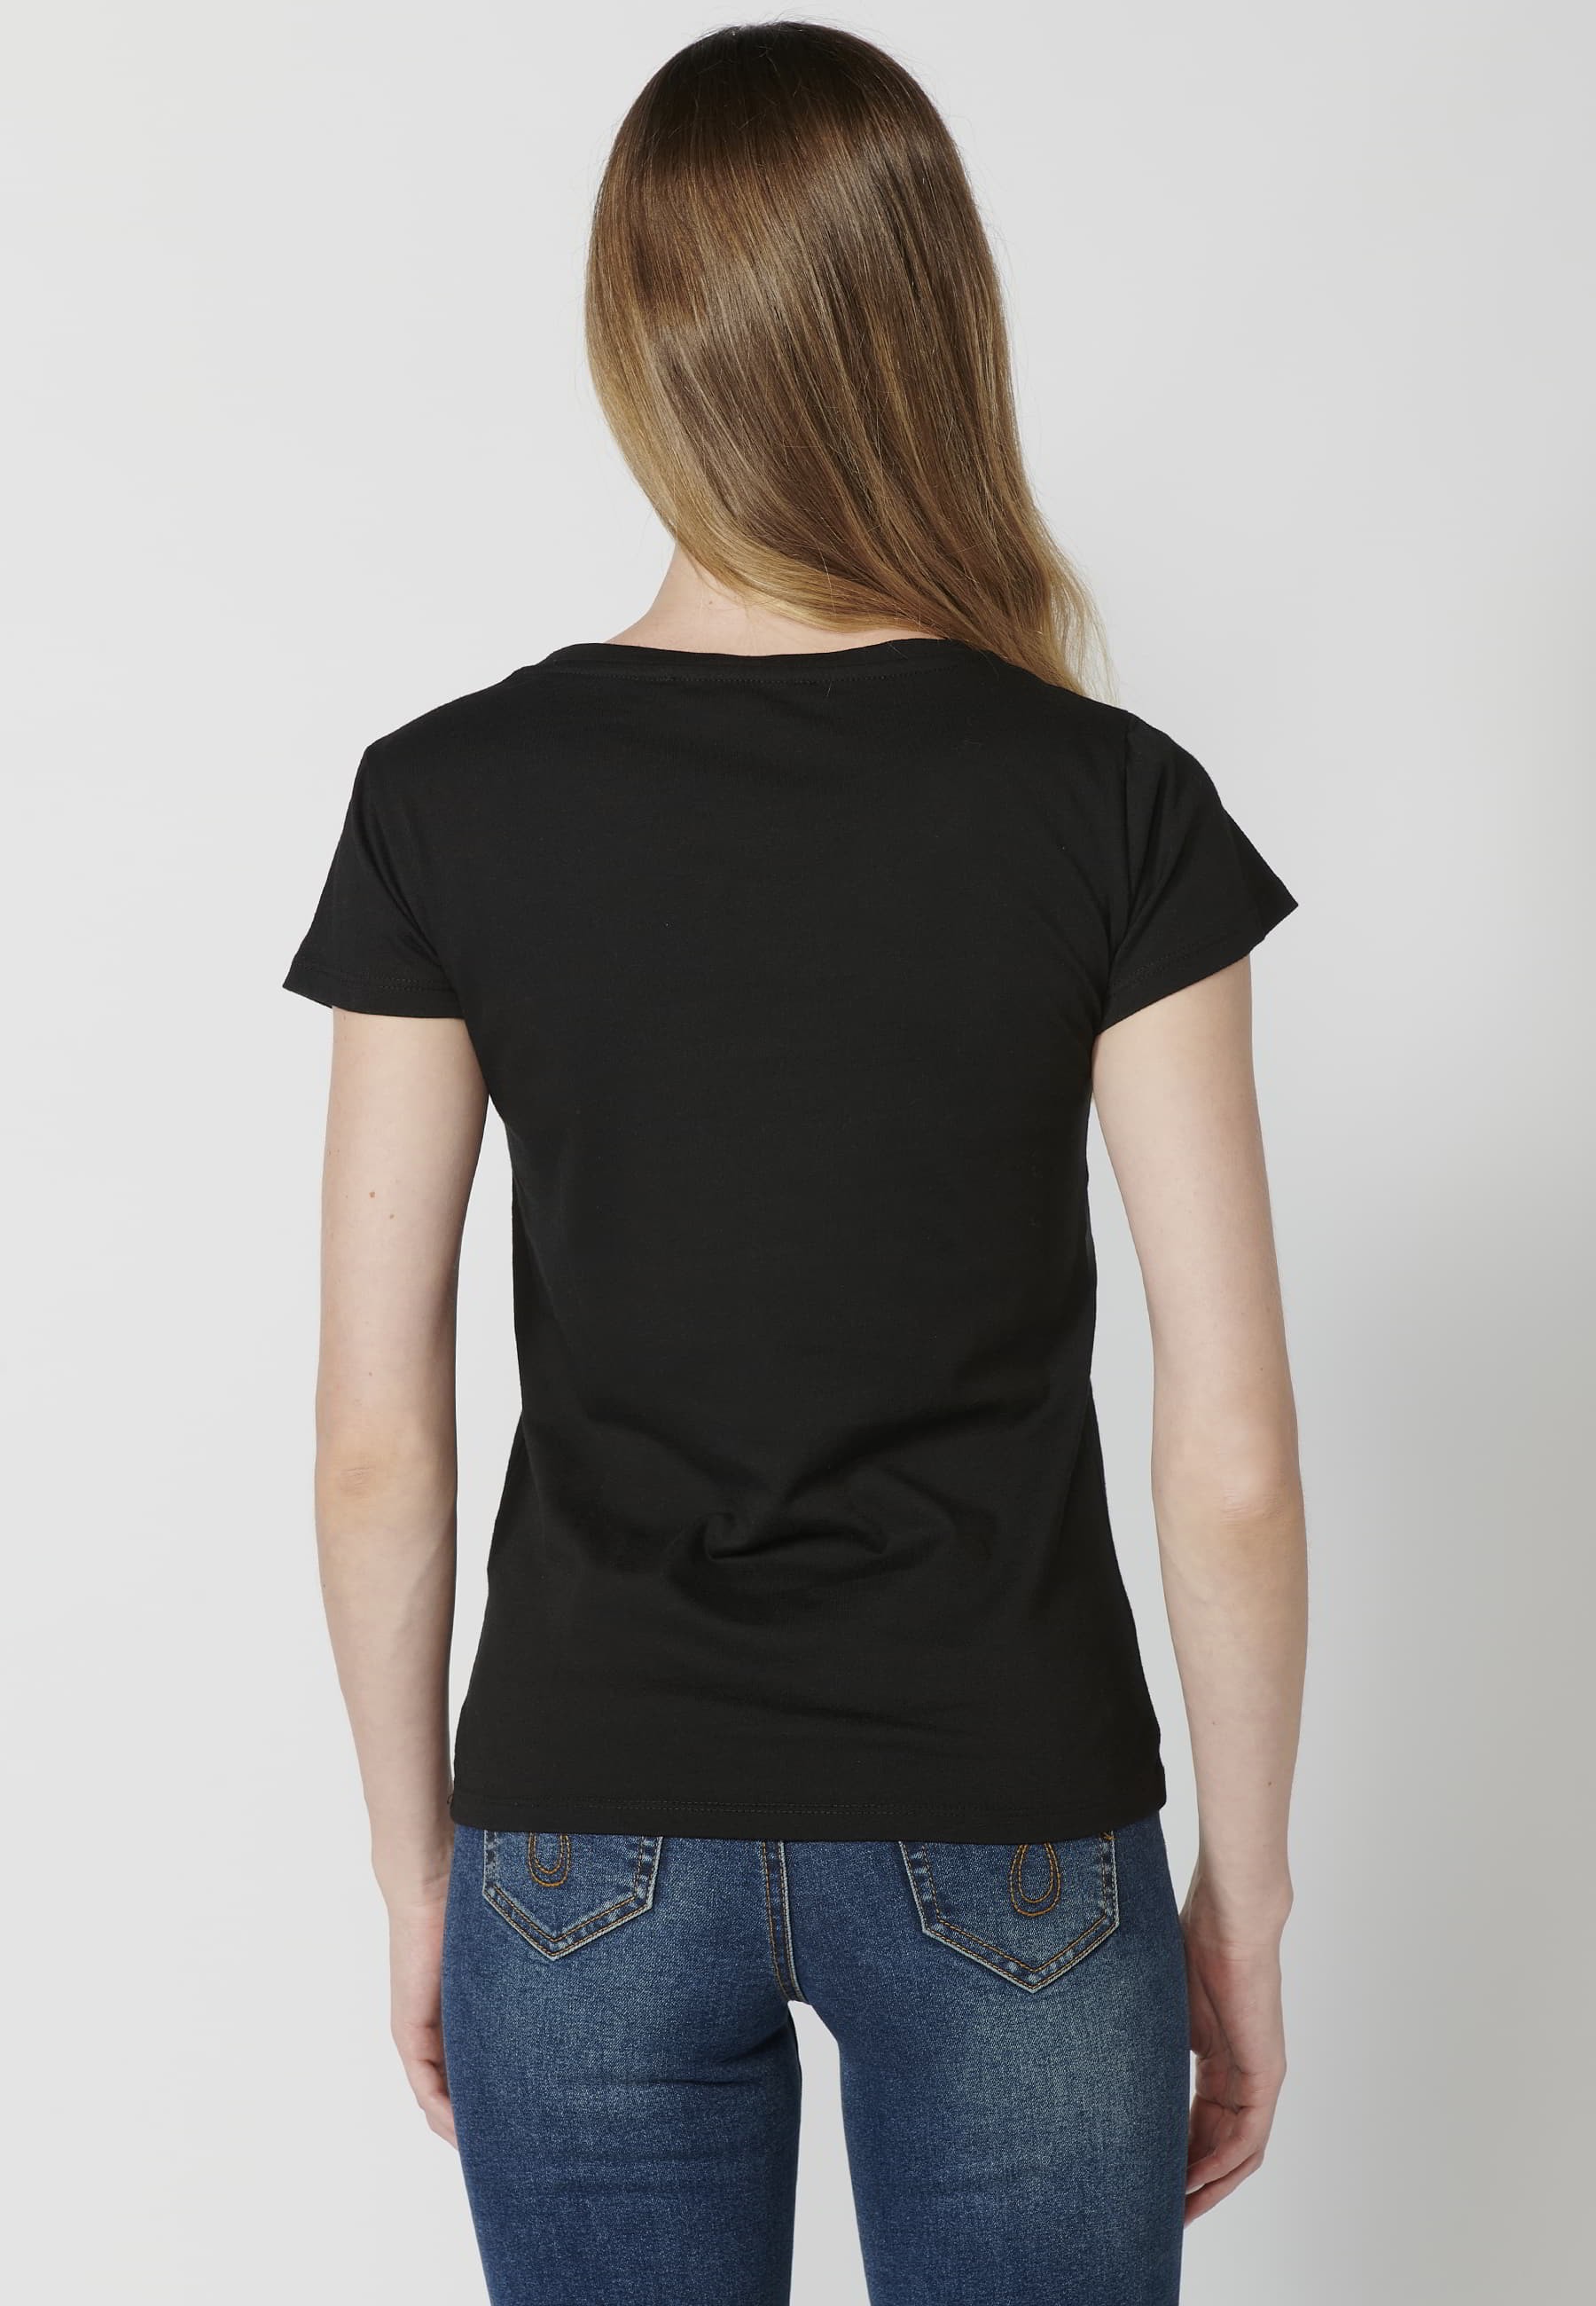 Damen-Kurzarm-T-Shirt aus Baumwolle mit schwarzem Blattmuster und Rundhalsausschnitt 5